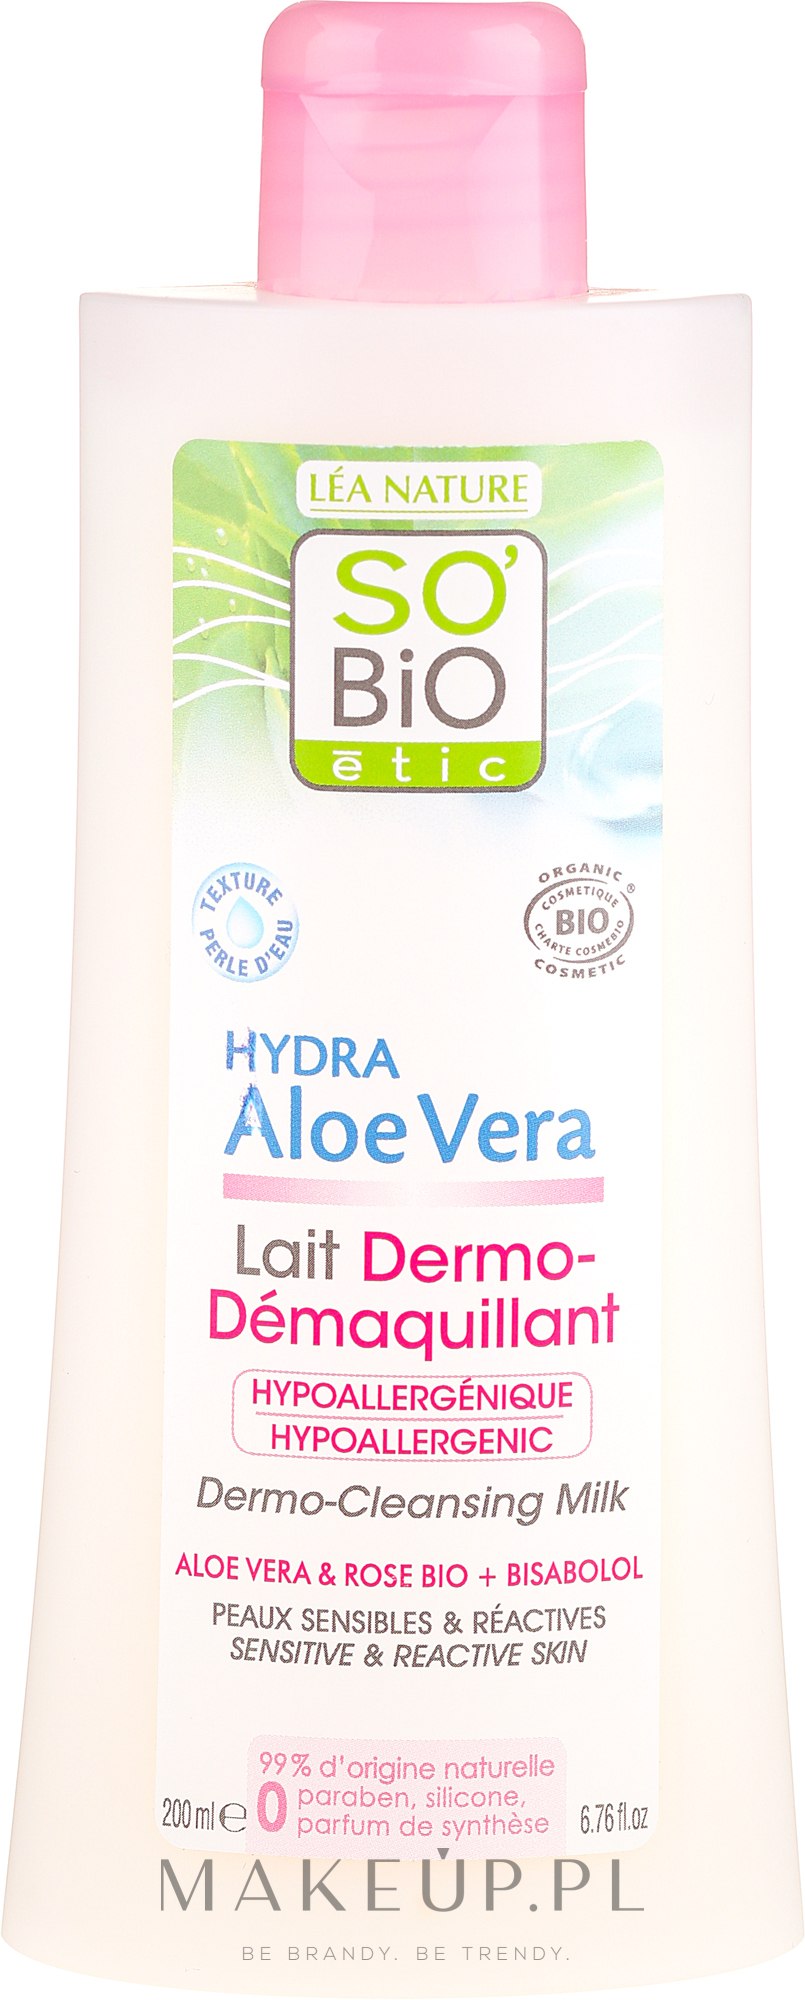 Mleczko do demakijażu twarzy do skóry delikatnej - So'Bio Etic Aloe Vera Dermo-Cleansing Milk — Zdjęcie 200 ml